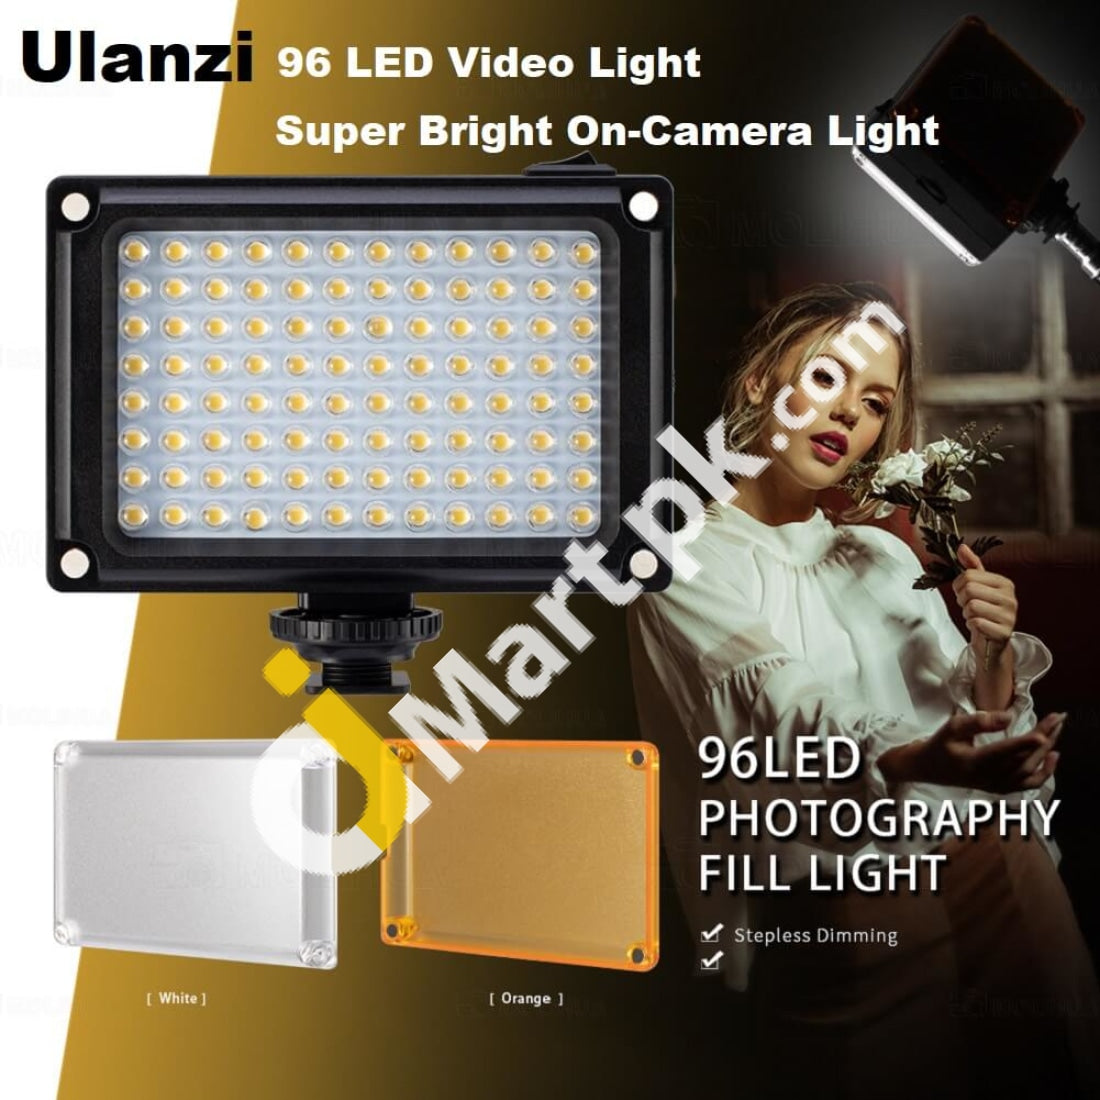 Led Video Light Ulanzi 96-Led On-Camera Photo Studio Lighting - Imported From Uk